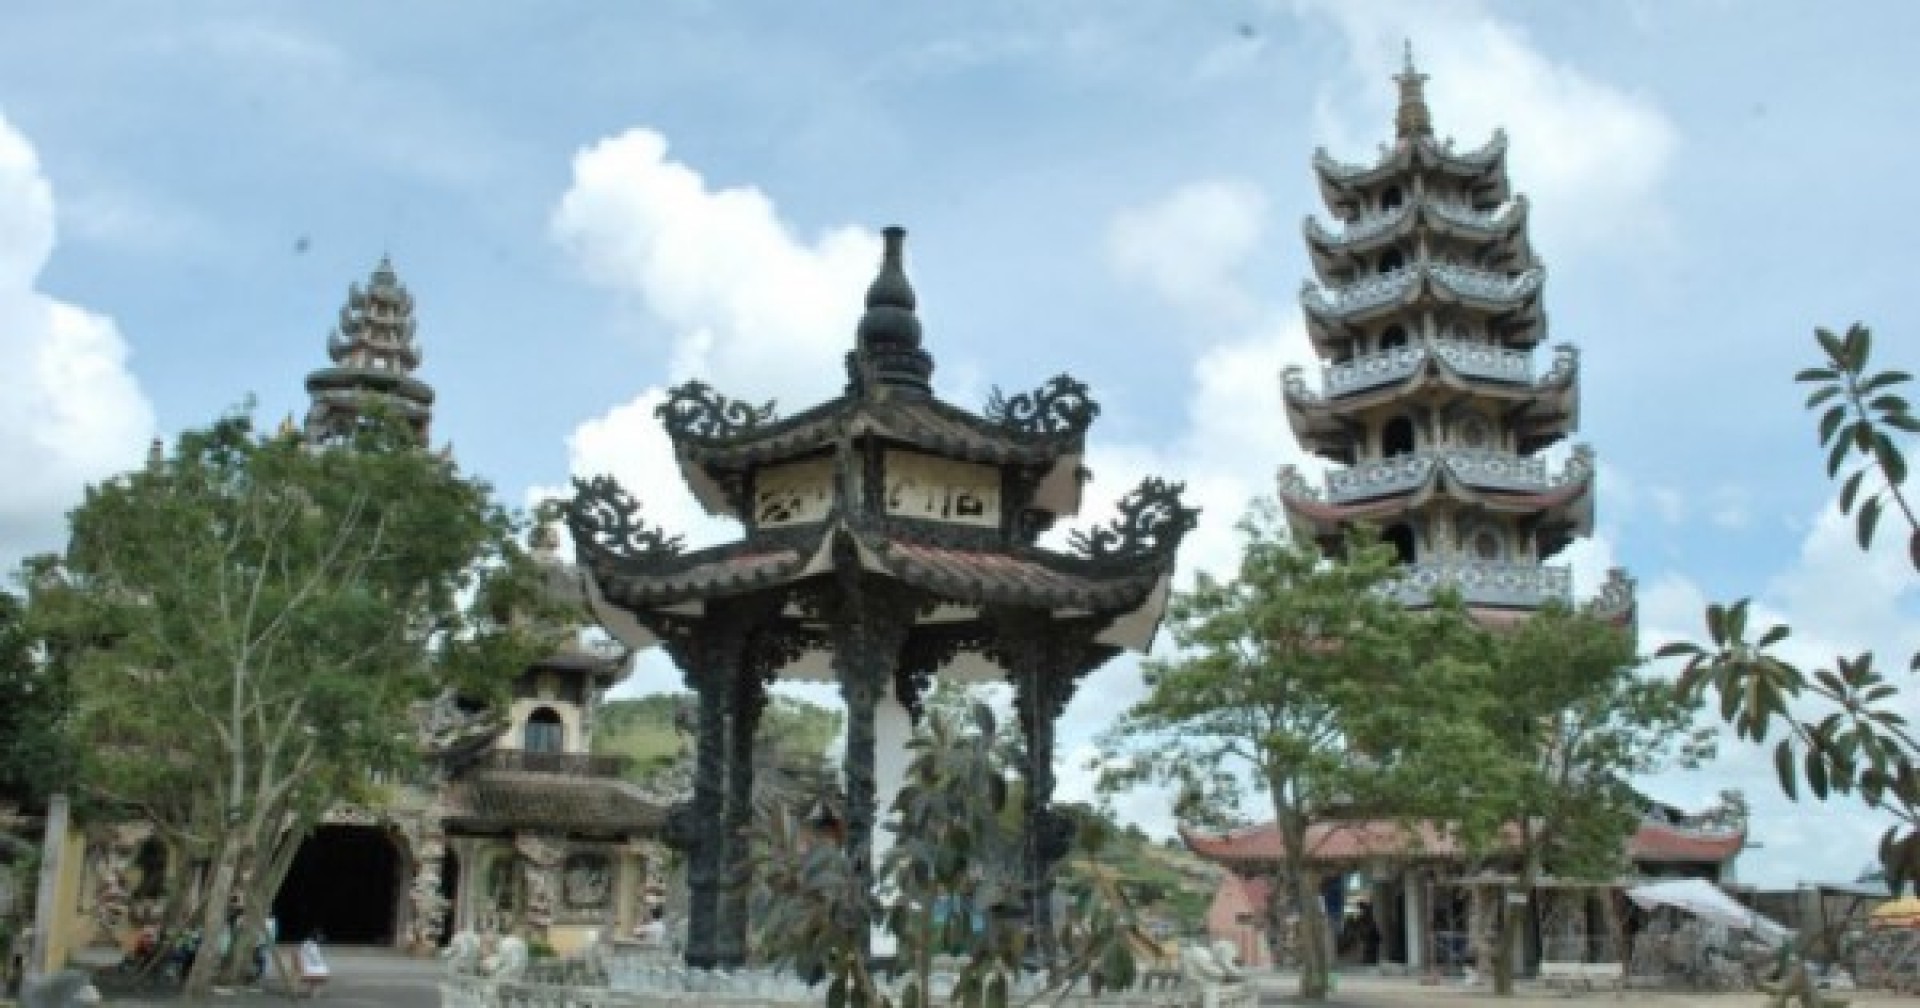 Chùa Trấn Quốc lọt vào top 10 ngôi chùa đẹp nhất thế giới